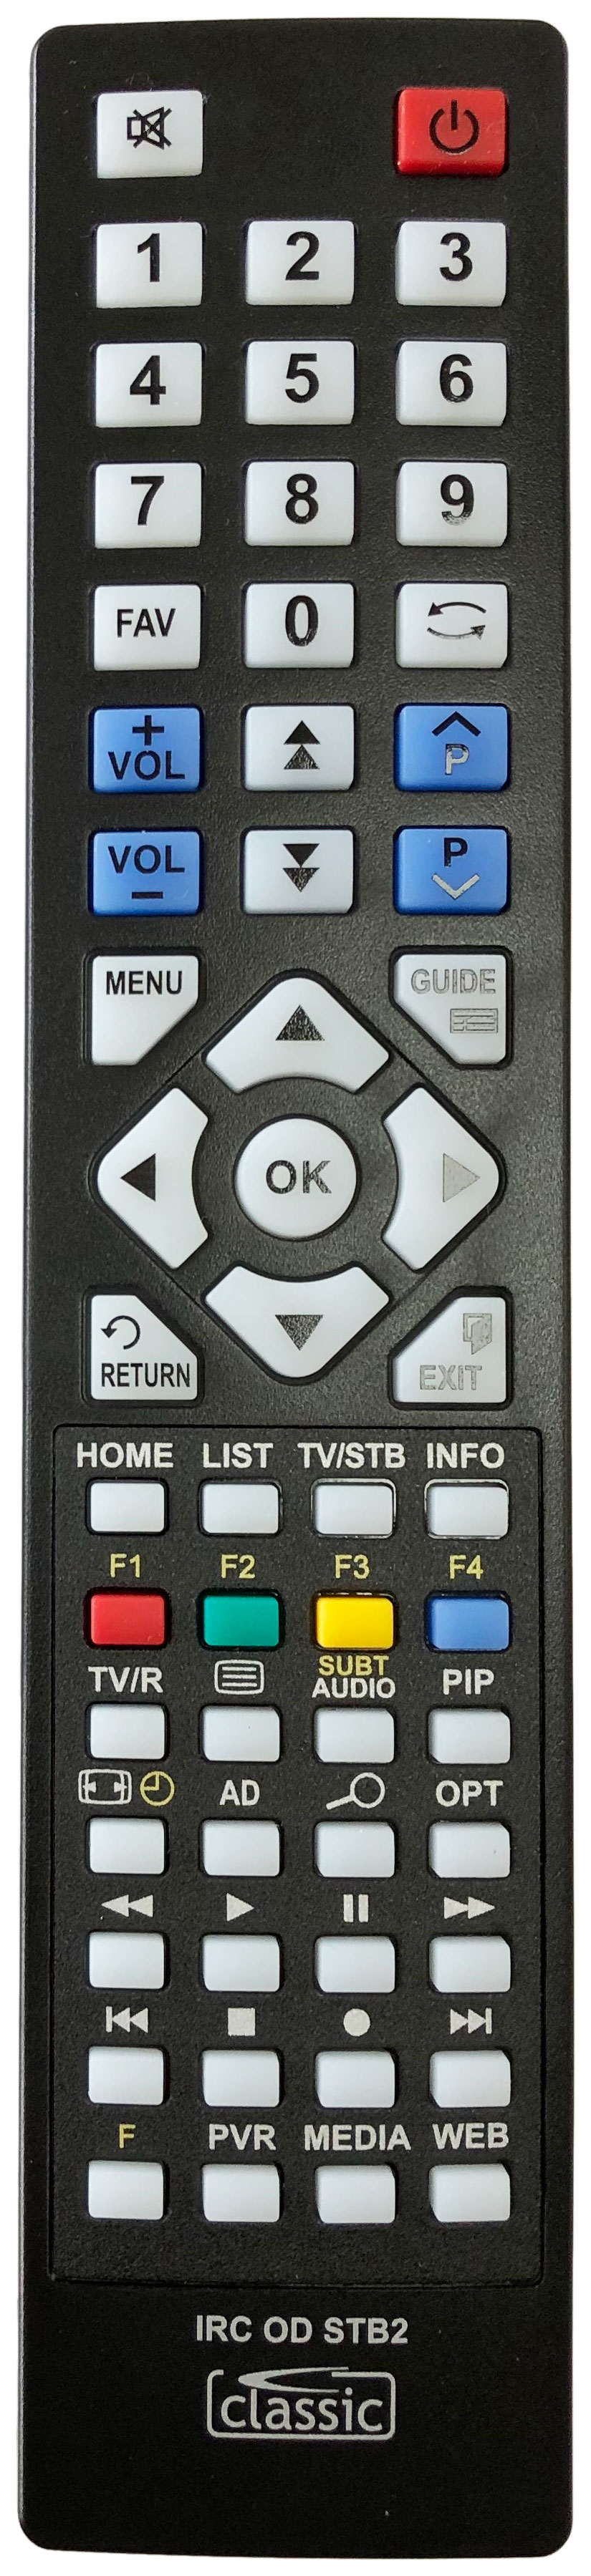 SAGEM DTR64160TECO Remote Control